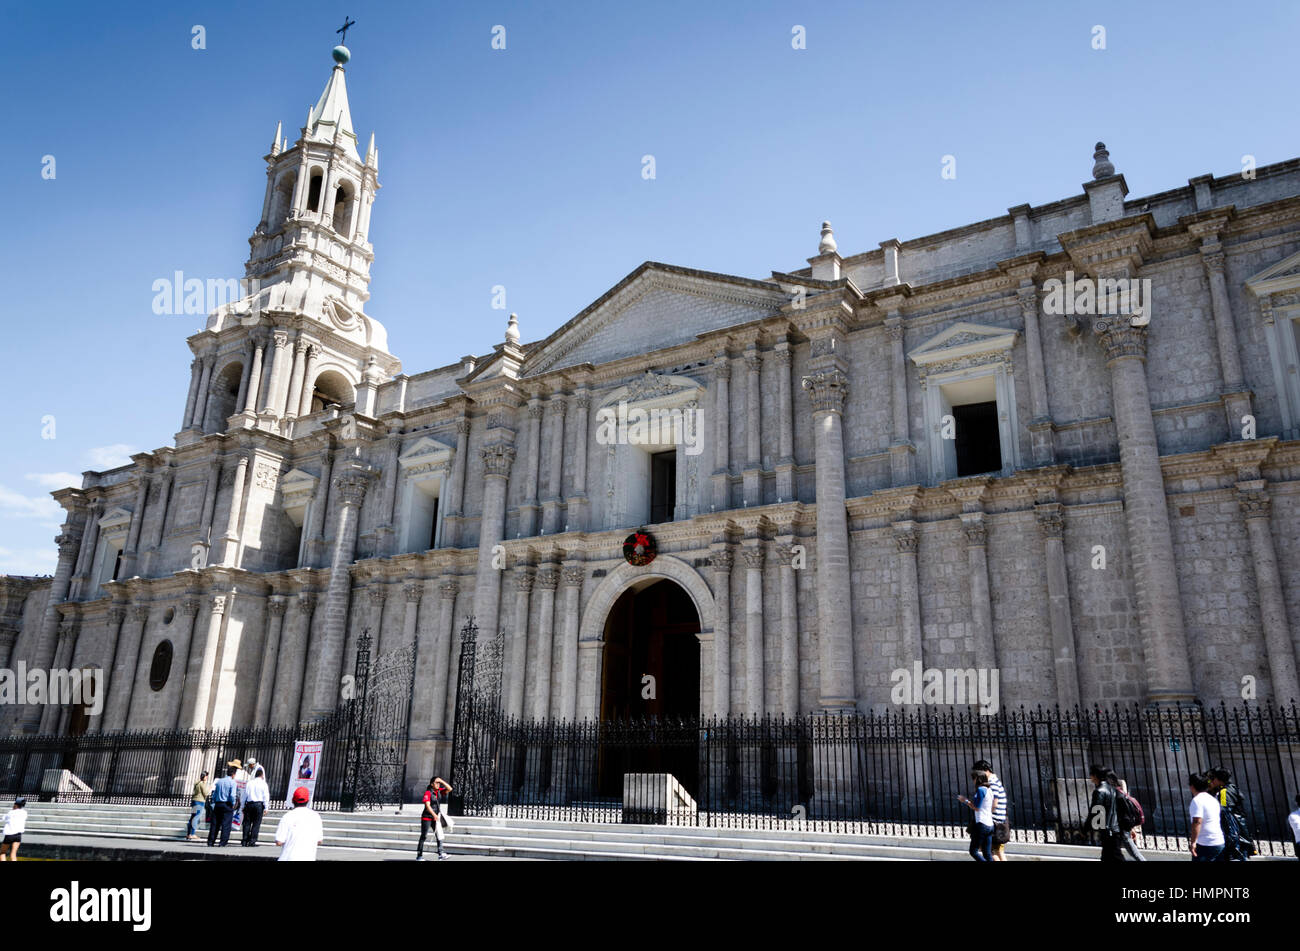 Catedral basílica de Santa María (Arequipa, Peru), de sillar (ignimbrita), estilo neorrenacentista con influencia gótica. Siglo XVII. Stock Photo